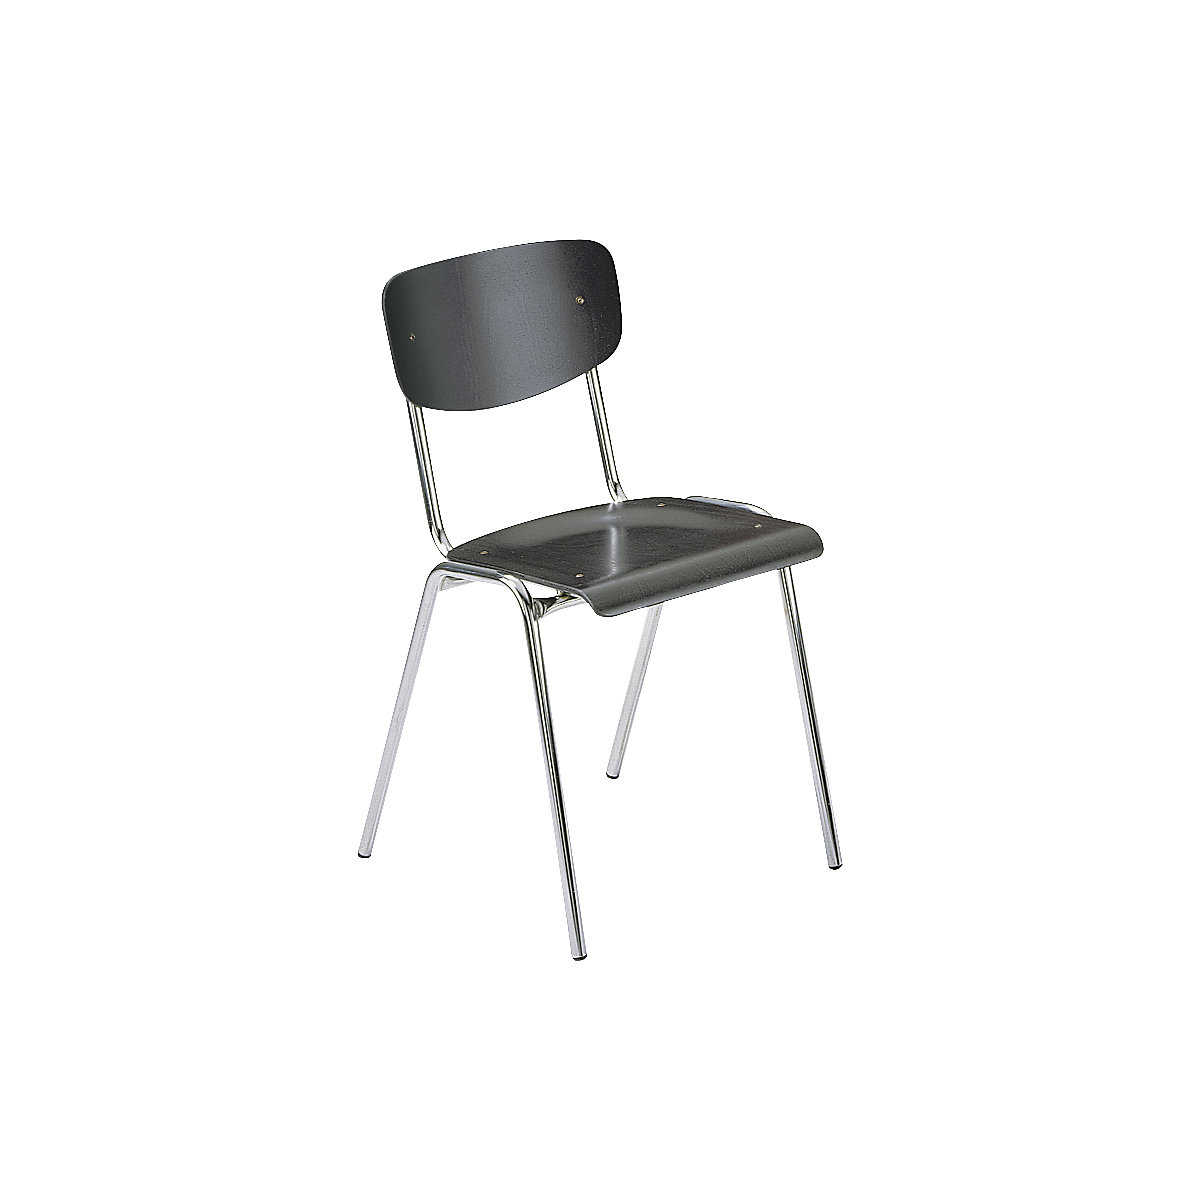 Stohovací židle CLASSIC, podstavec pochromovaný, bal.j. 4 ks, dřevo antracitové-4